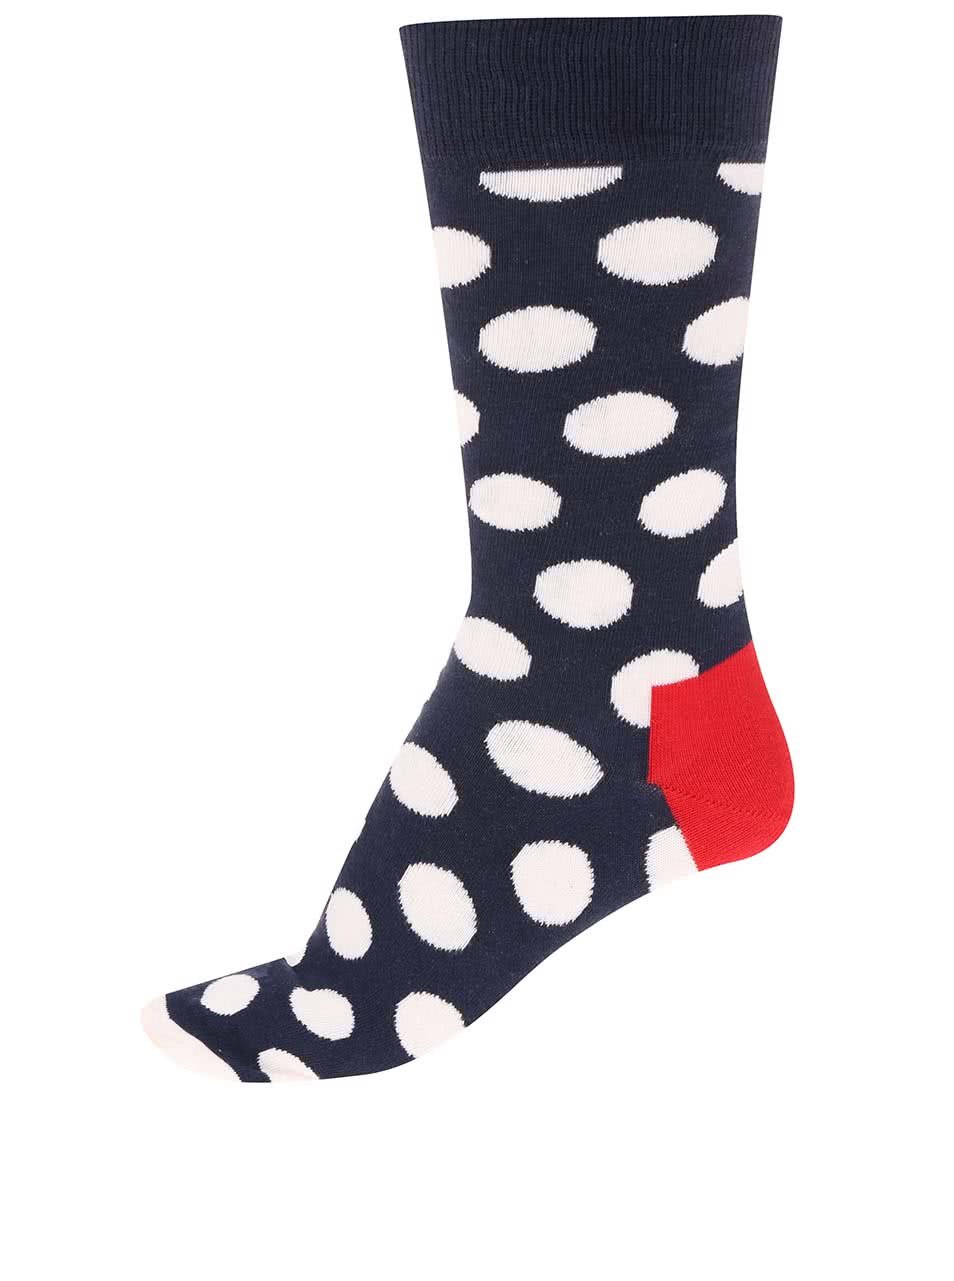 Tmavě modré unisex ponožky s bílými puntíky Happy Socks Big Dots